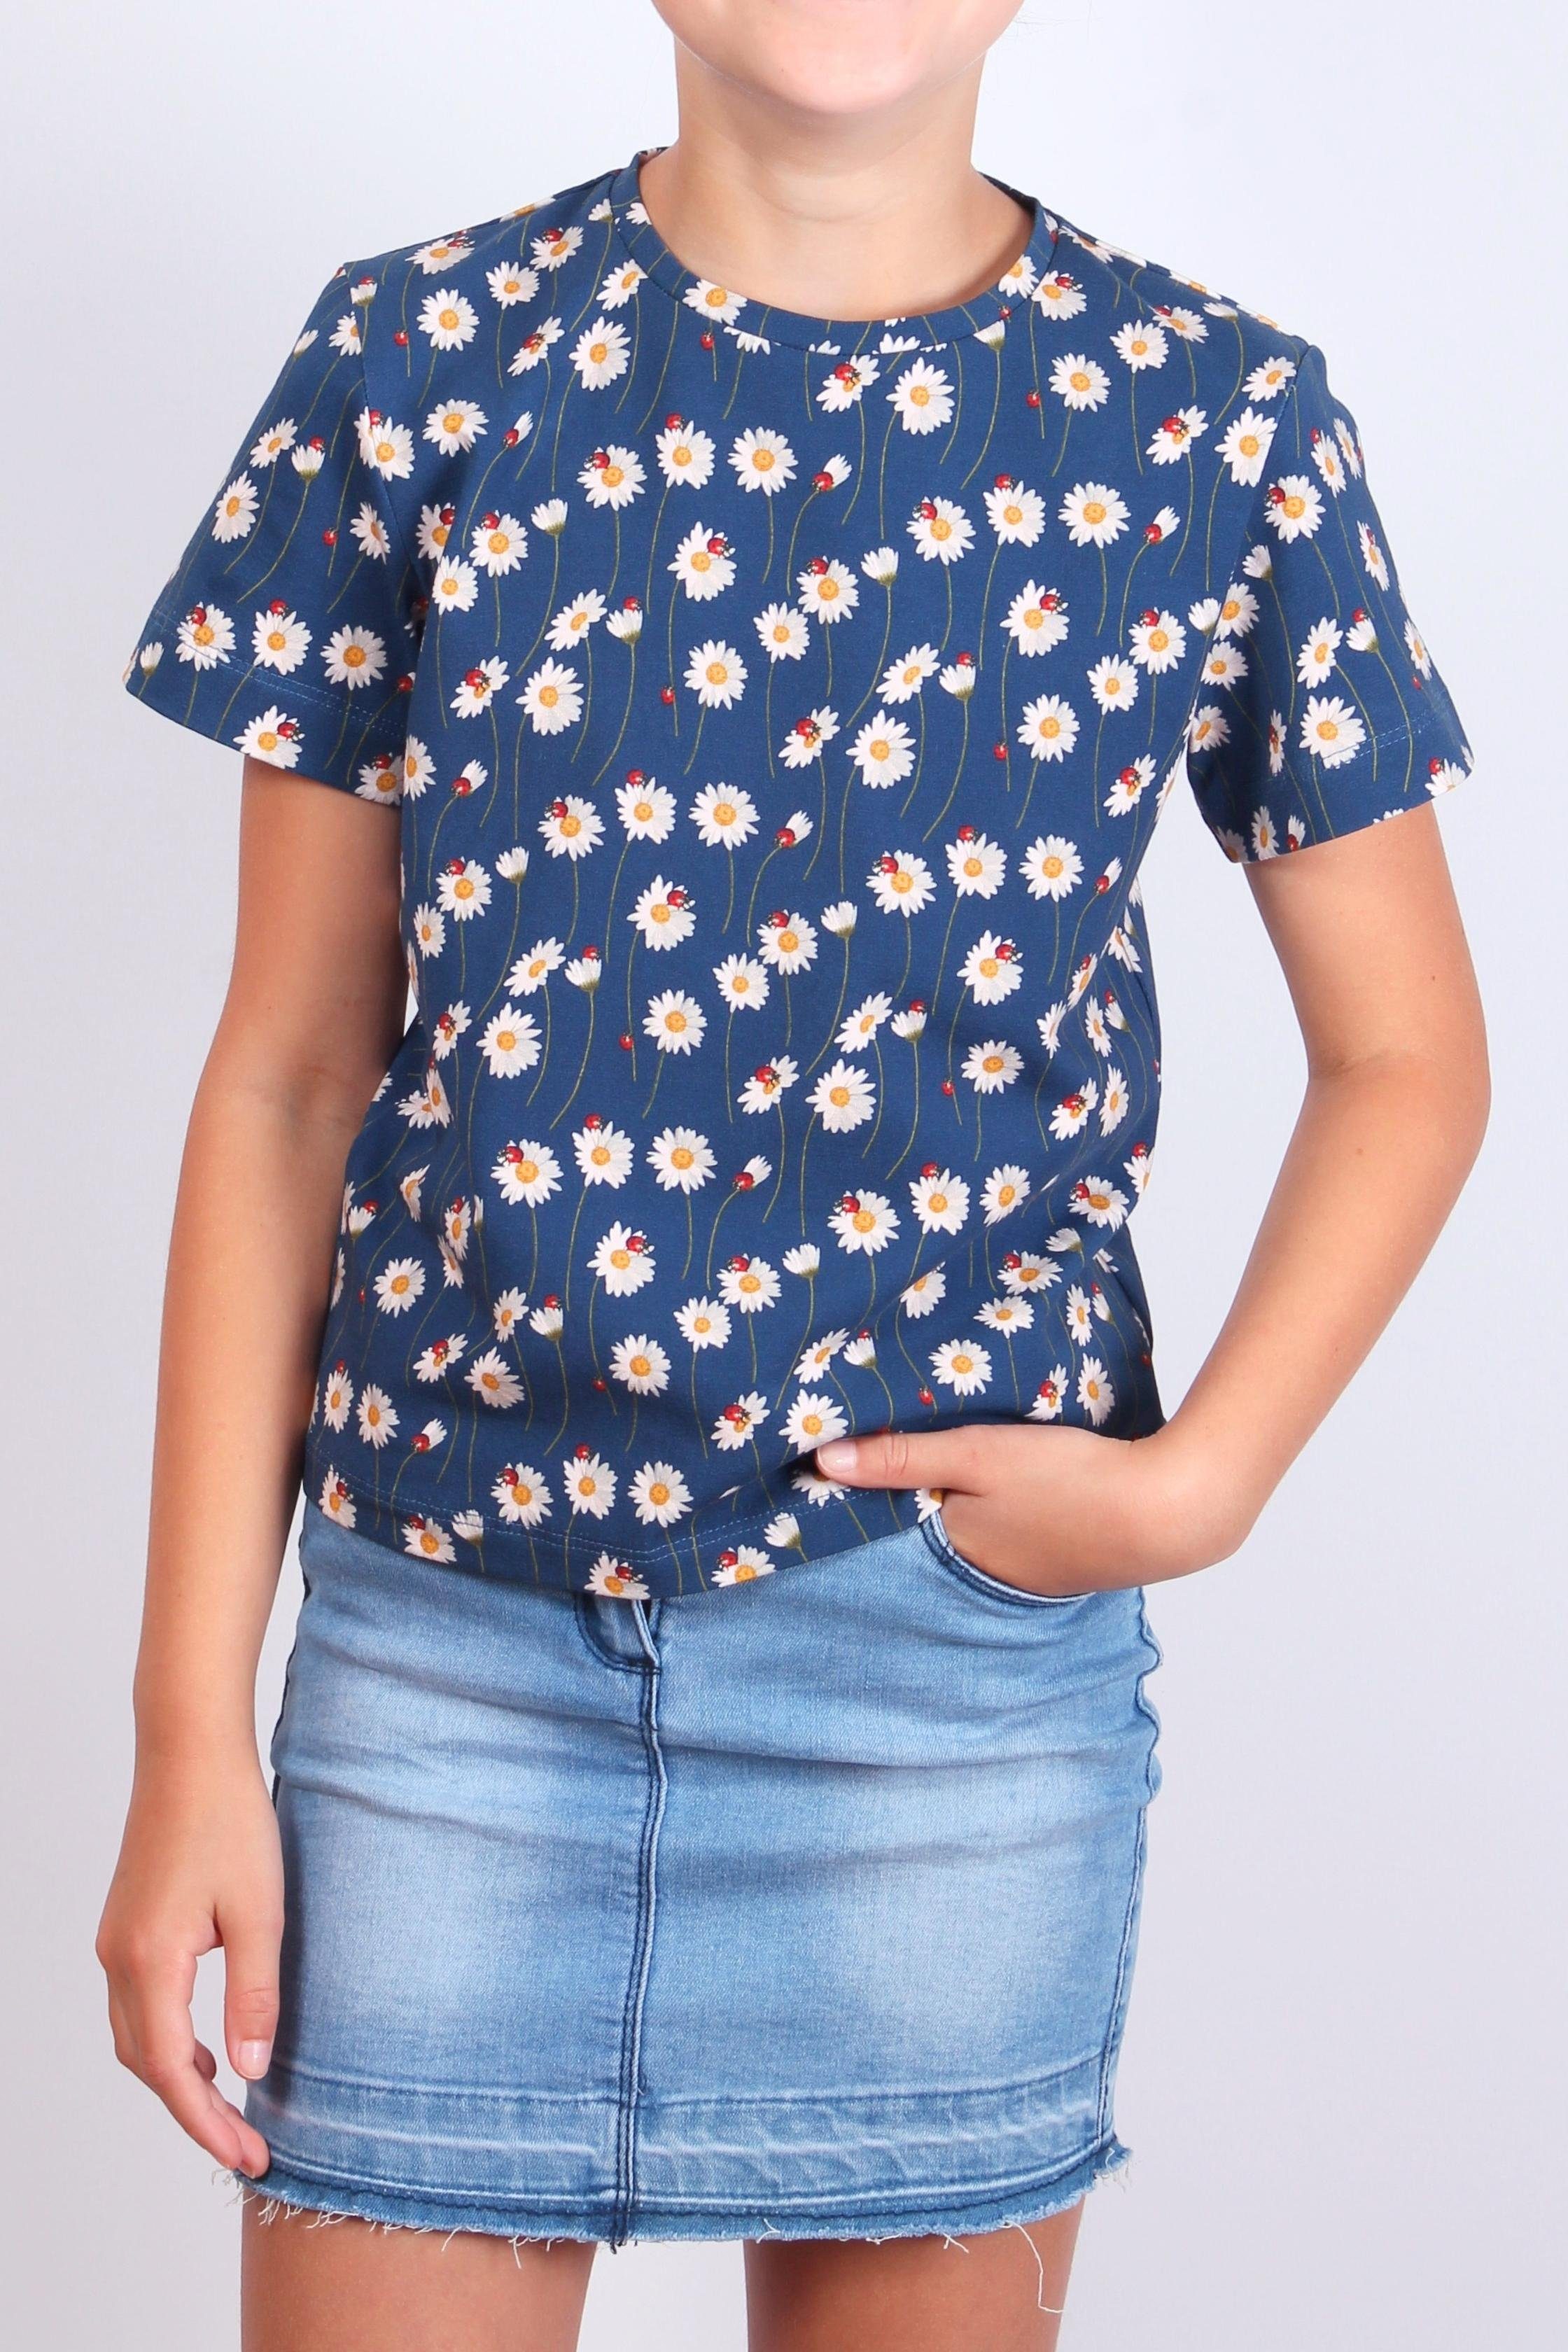 Befürworter coolismo T-Shirt Print-Shirt für Mädchen Gänseblümchen Rundhalsausschnitt, mit Alloverprint, Baumwolle